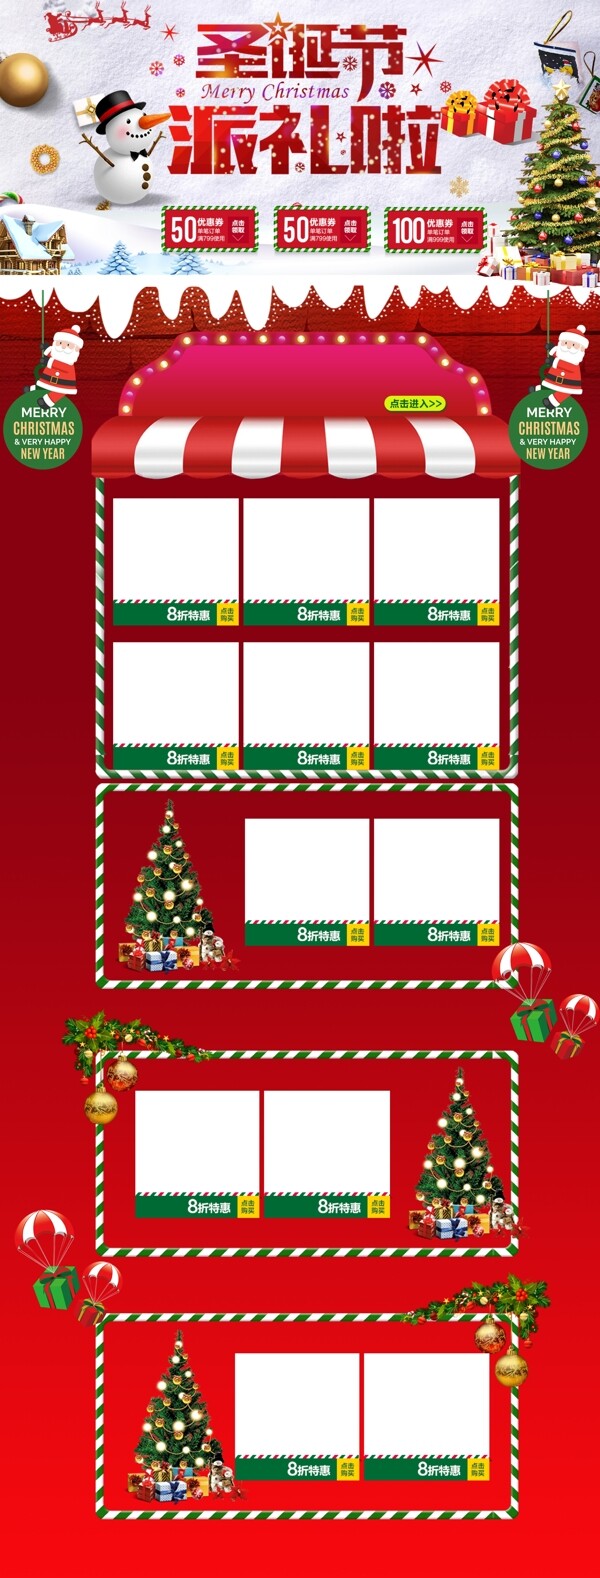 红绿色卡通促销圣诞节通用淘宝电商首页模板